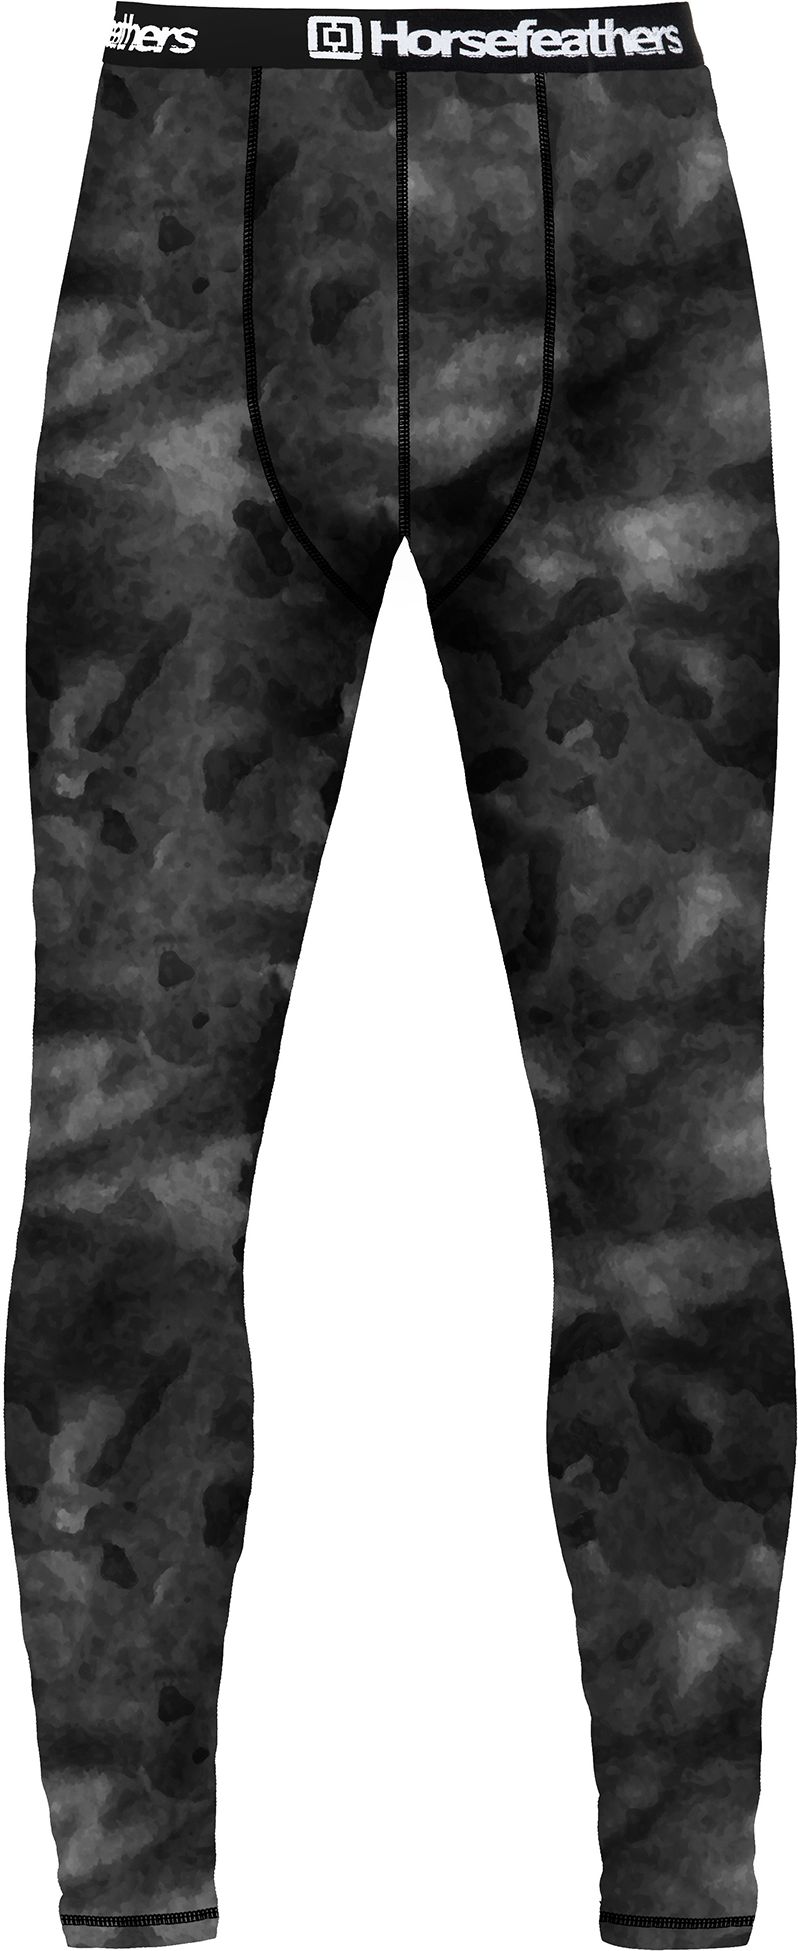 pánské termoprádlo - kalhoty HORSEFEATHERS RILEY PANTS (gray camo)